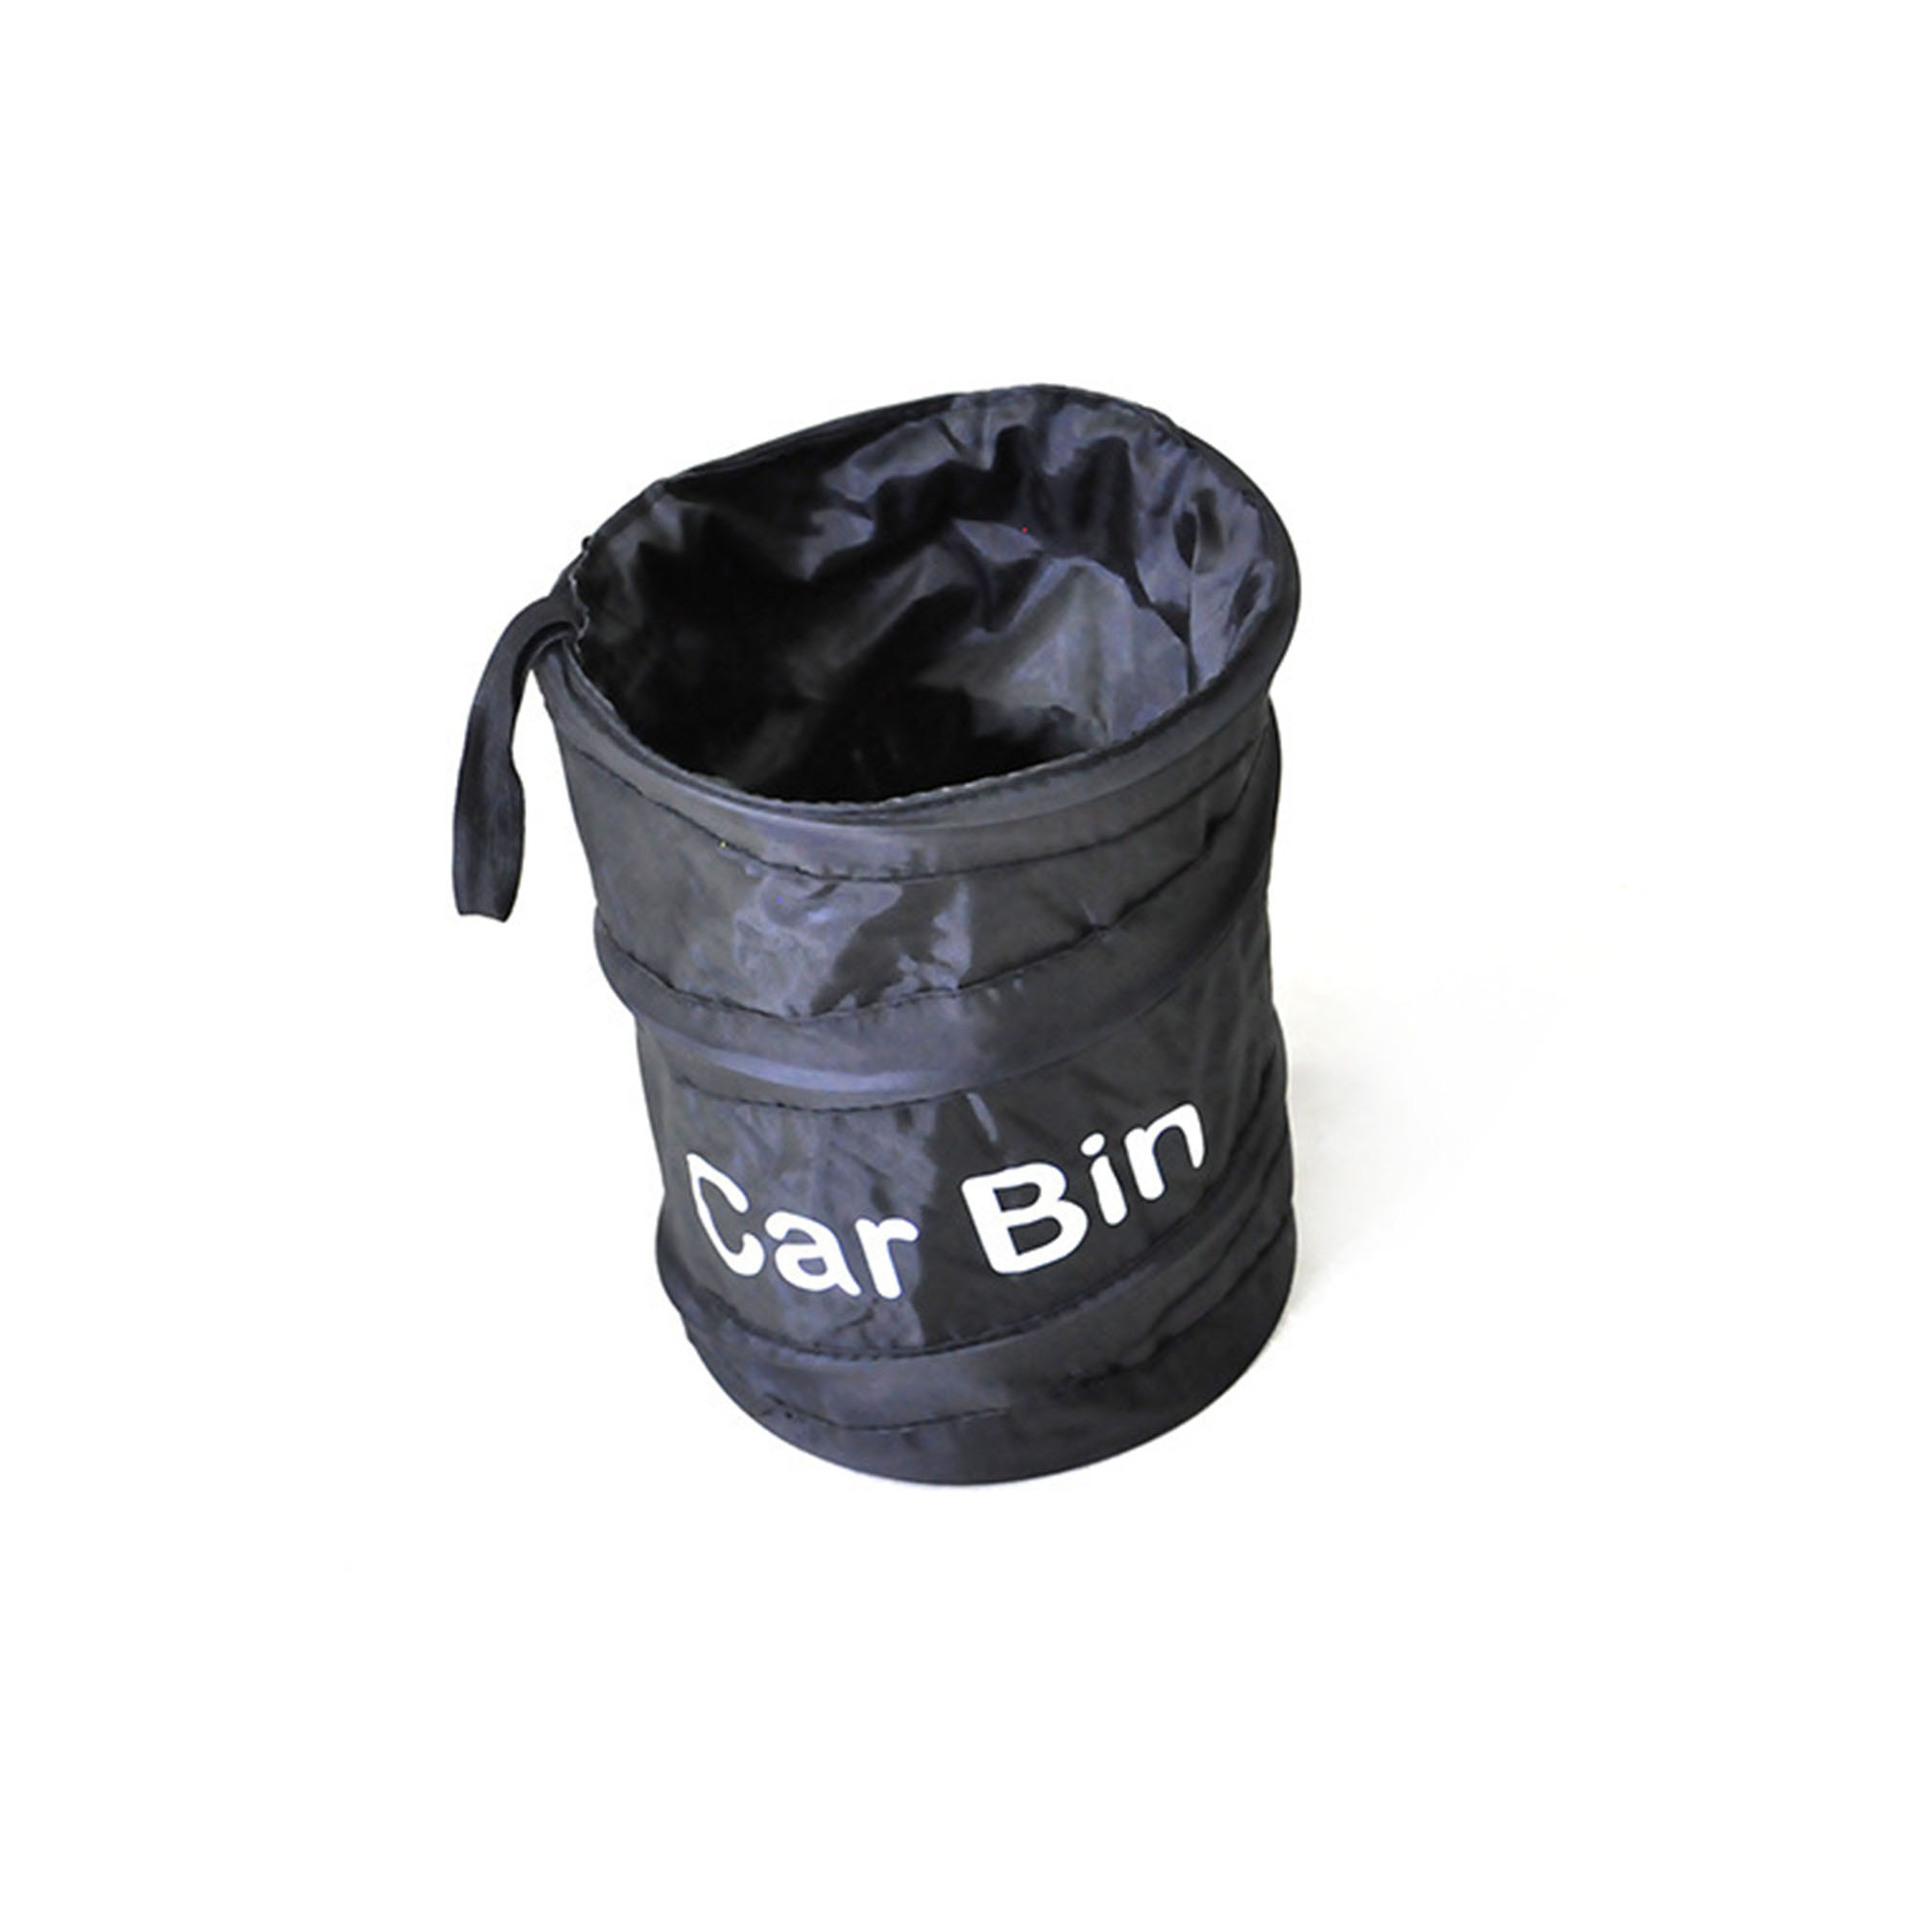 TMYQM Car Dustbin Foldable Bin Car Trash Garbage Rubbish Hanging